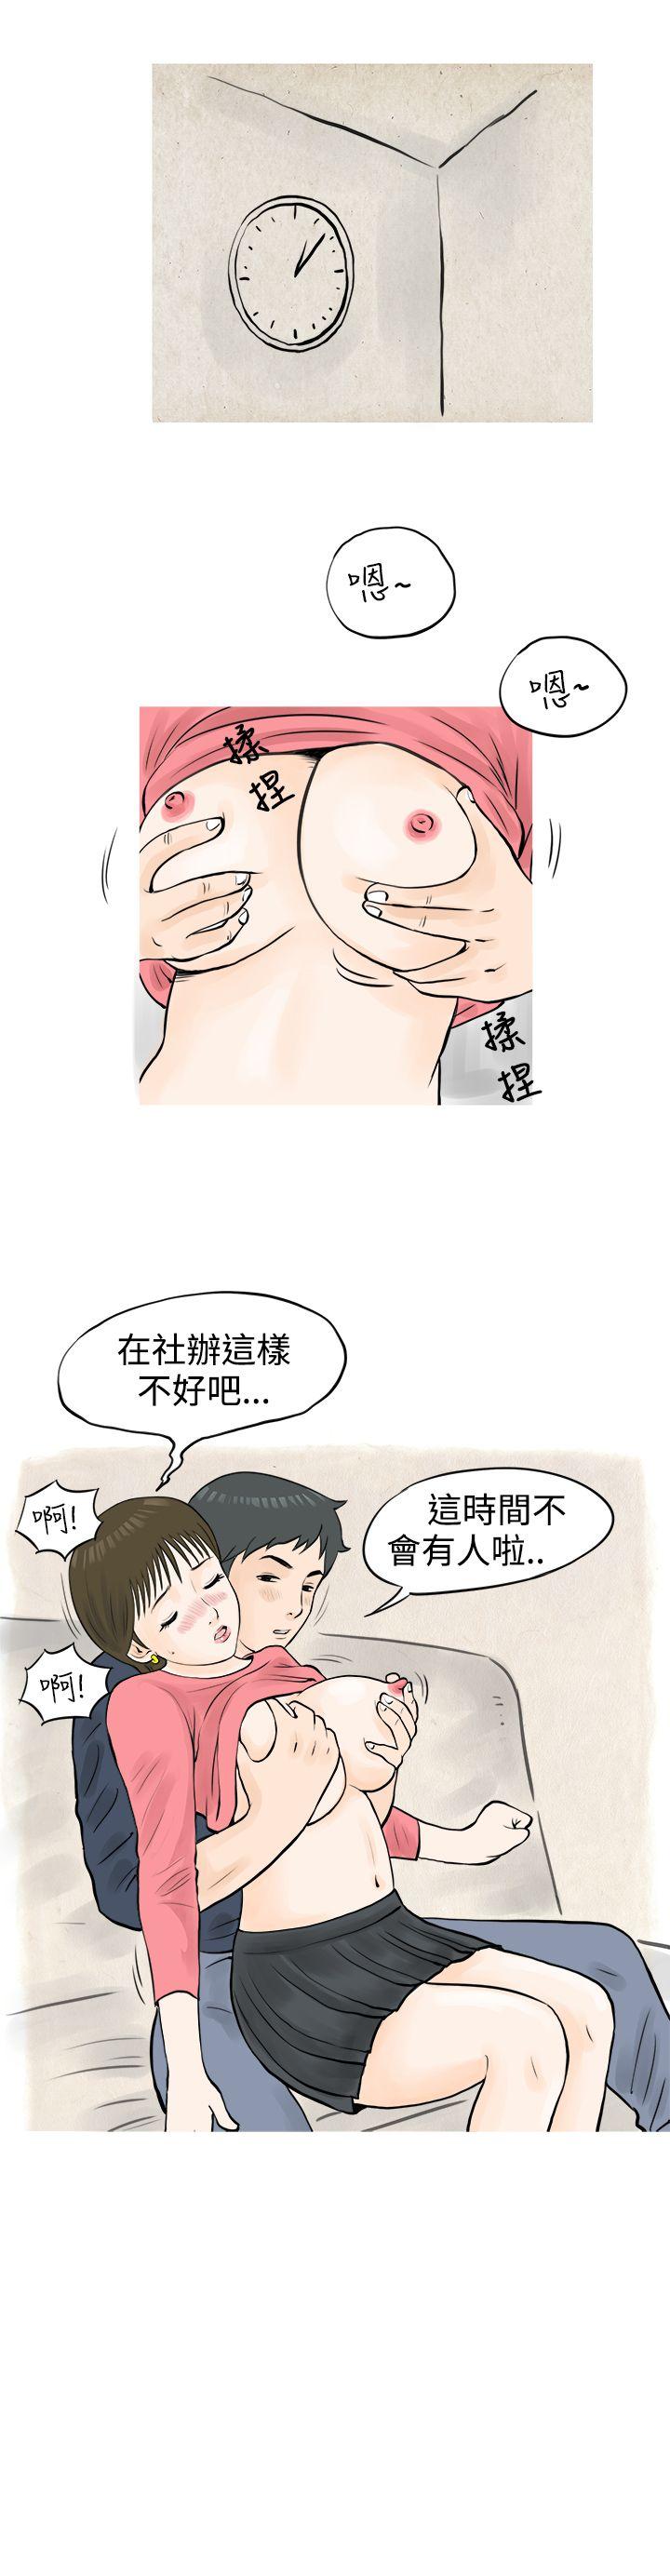 韩国污漫画 秘密Story 发生在热音社的小故事(下) 13